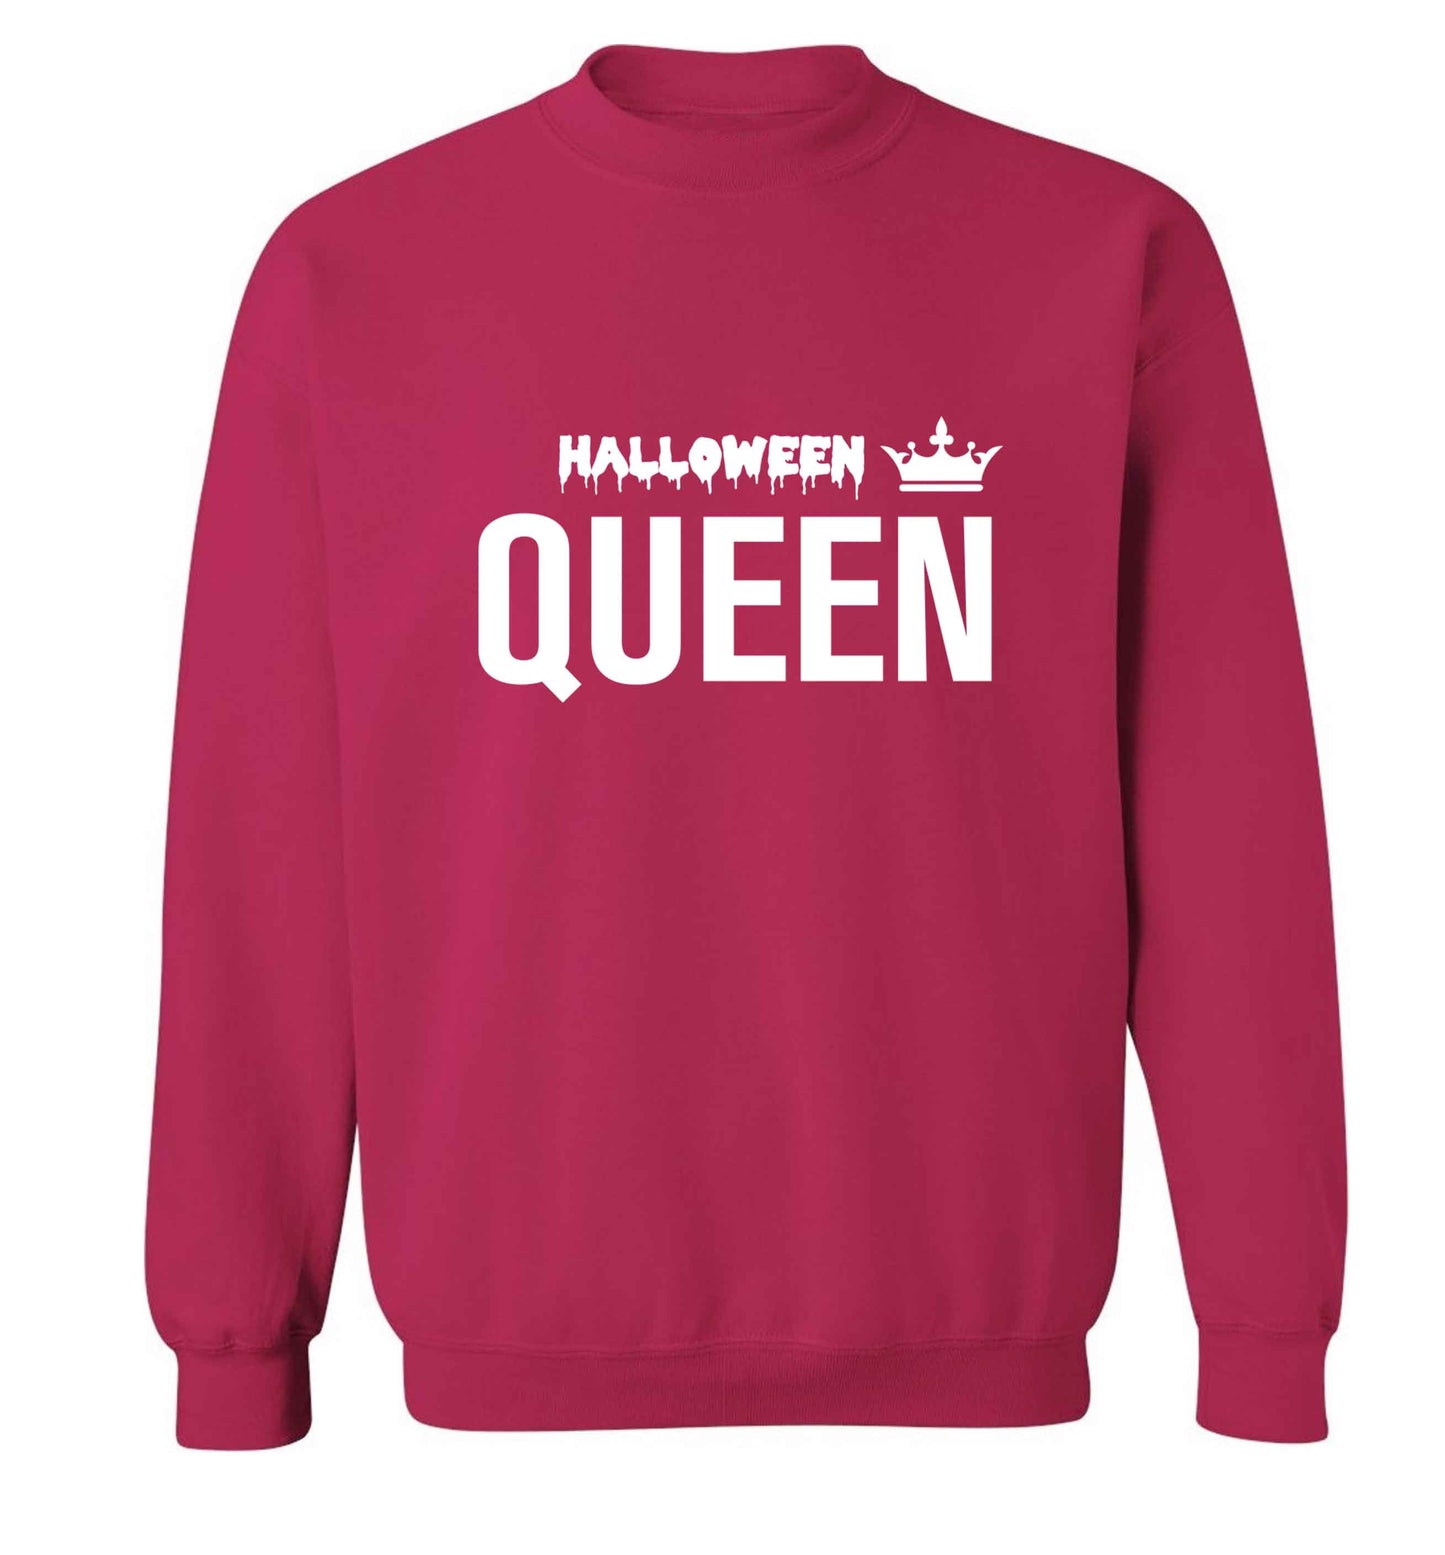 Halloween queen adult's unisex pink sweater 2XL